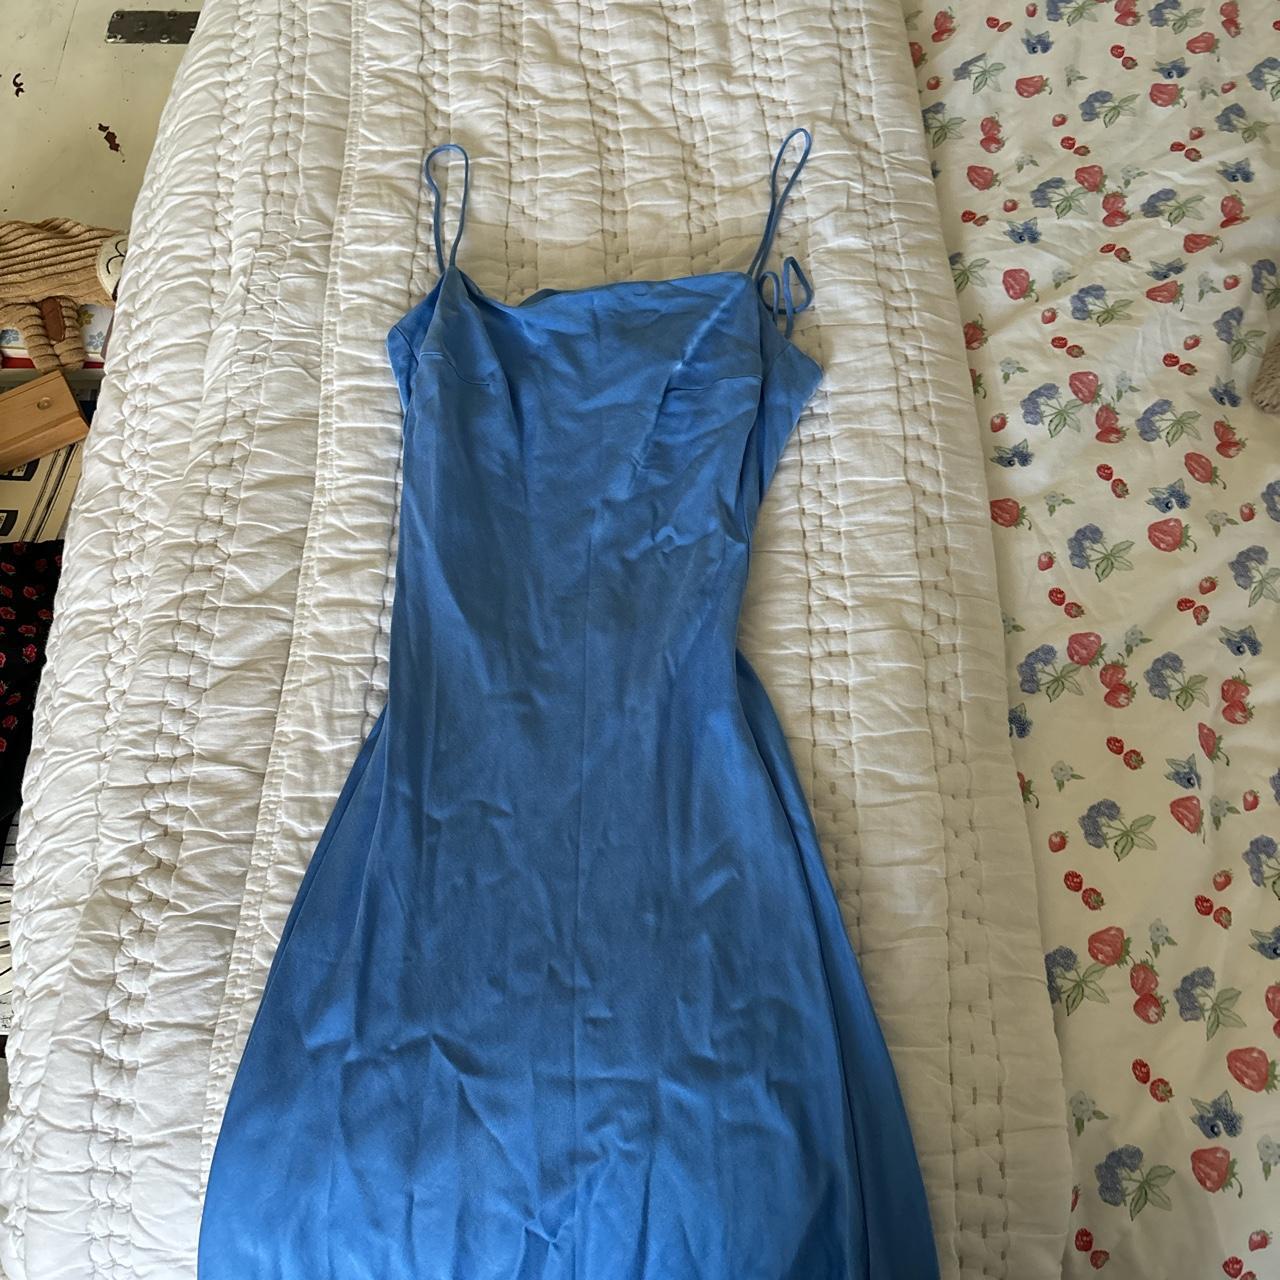 Djerf Avenue Women's Blue Dress